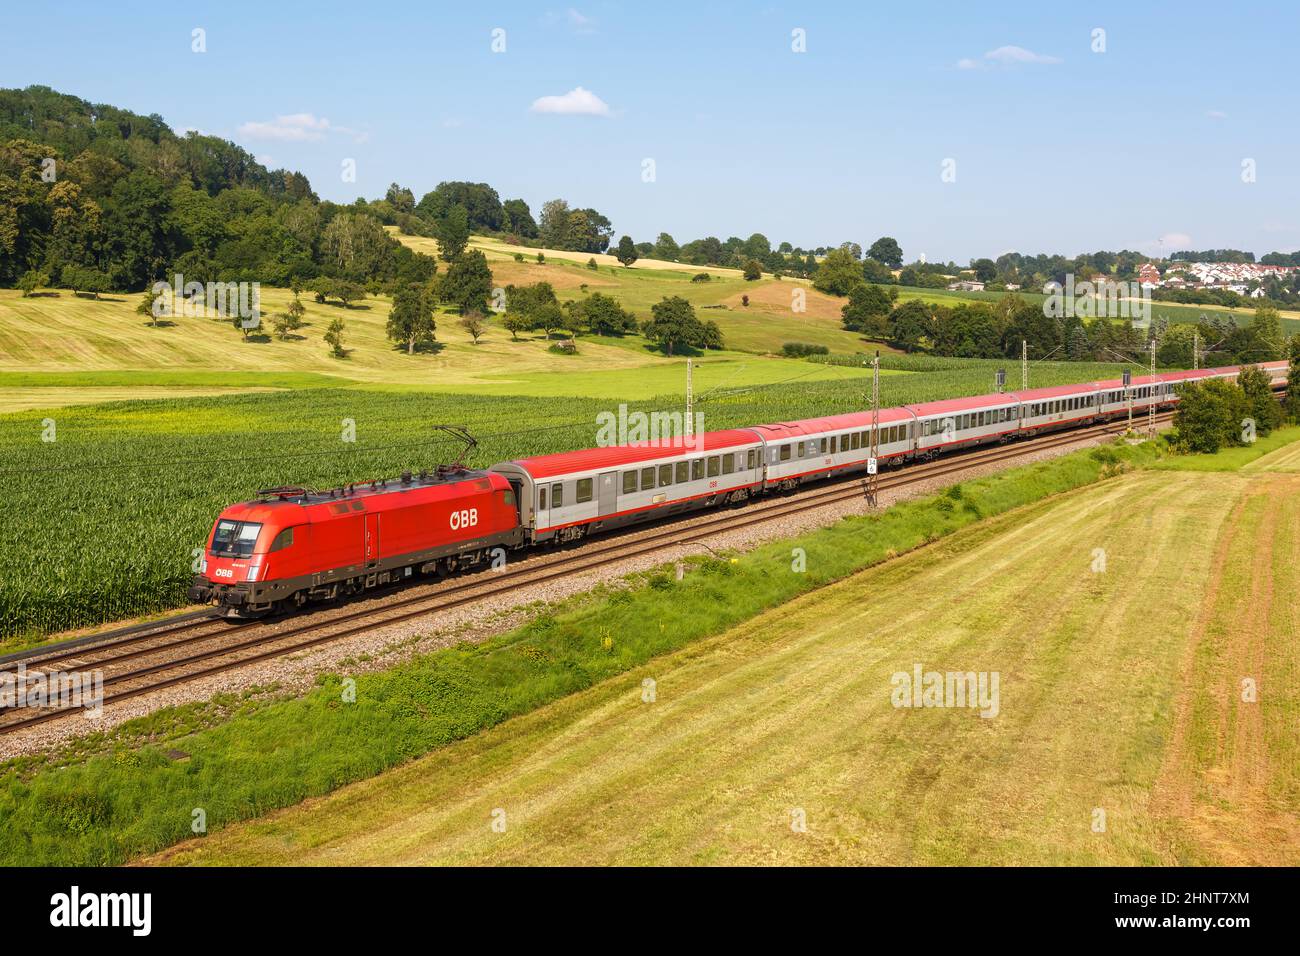 InterCity IC train of ÖBB Österreichische Bundesbahnen in Uhingen, Germany Stock Photo